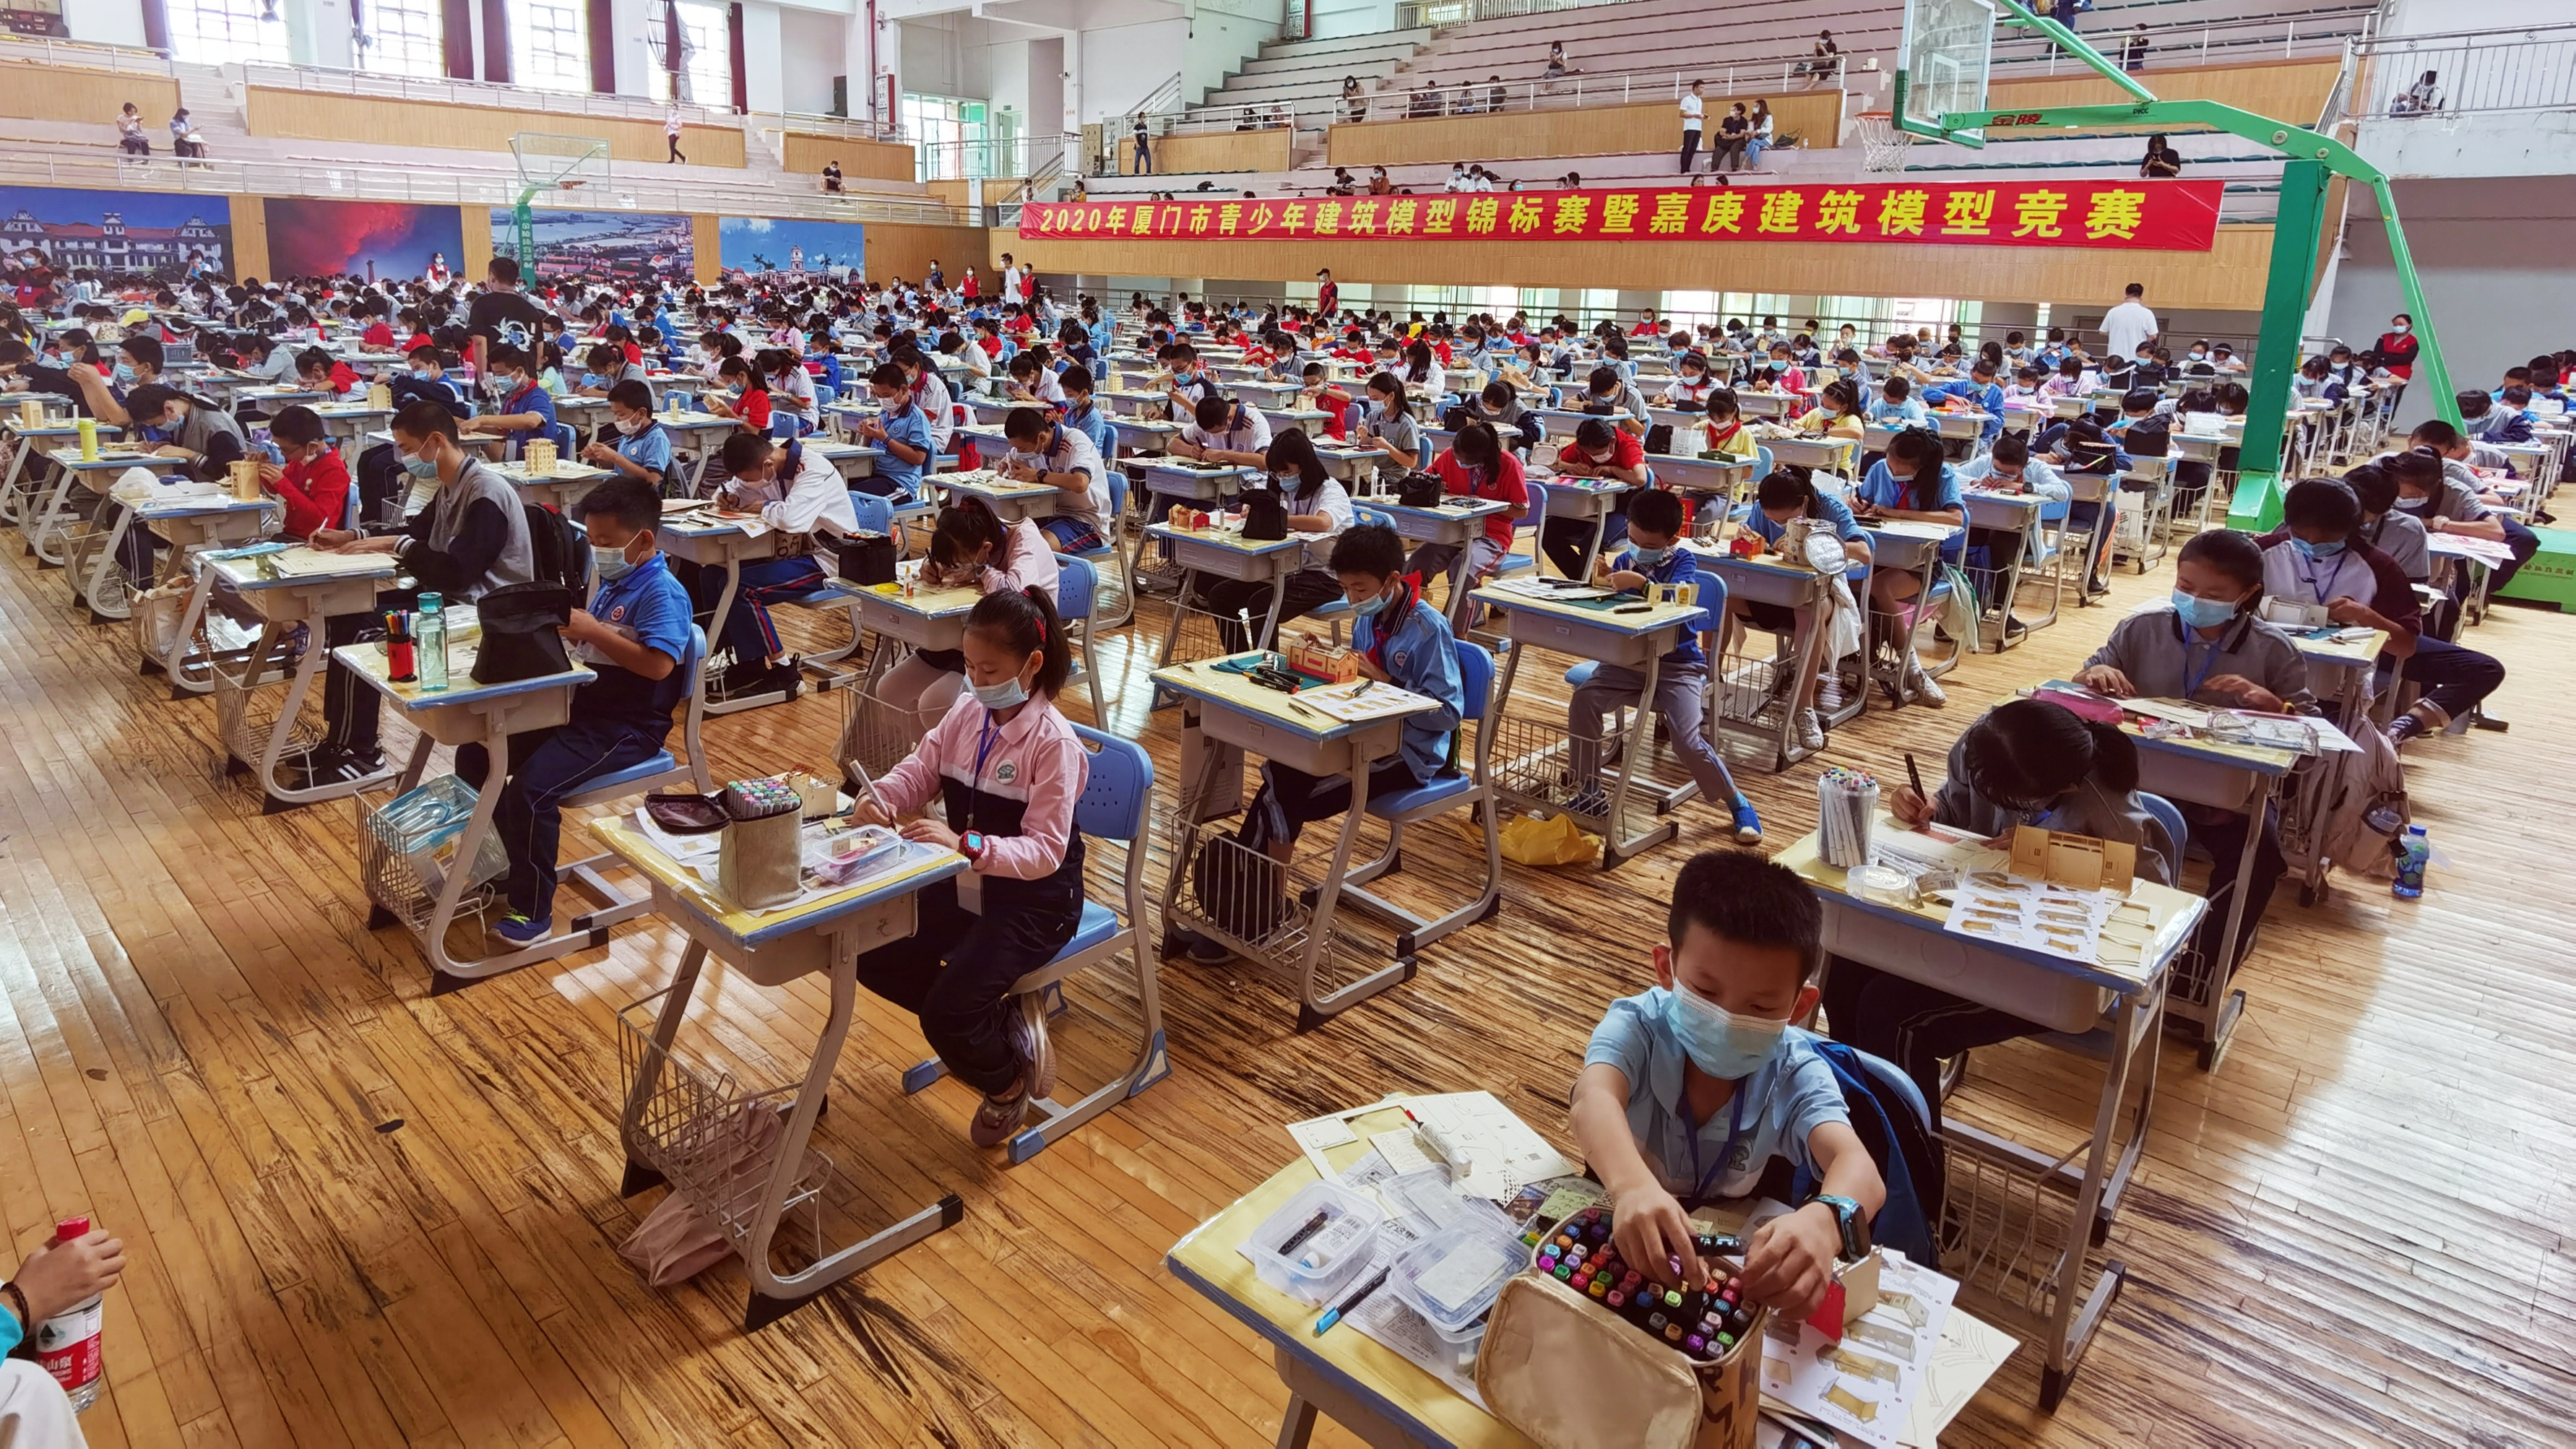 厦门市青少年嘉庚建筑纸模型比赛在福建省厦门集美中学举行.jpg